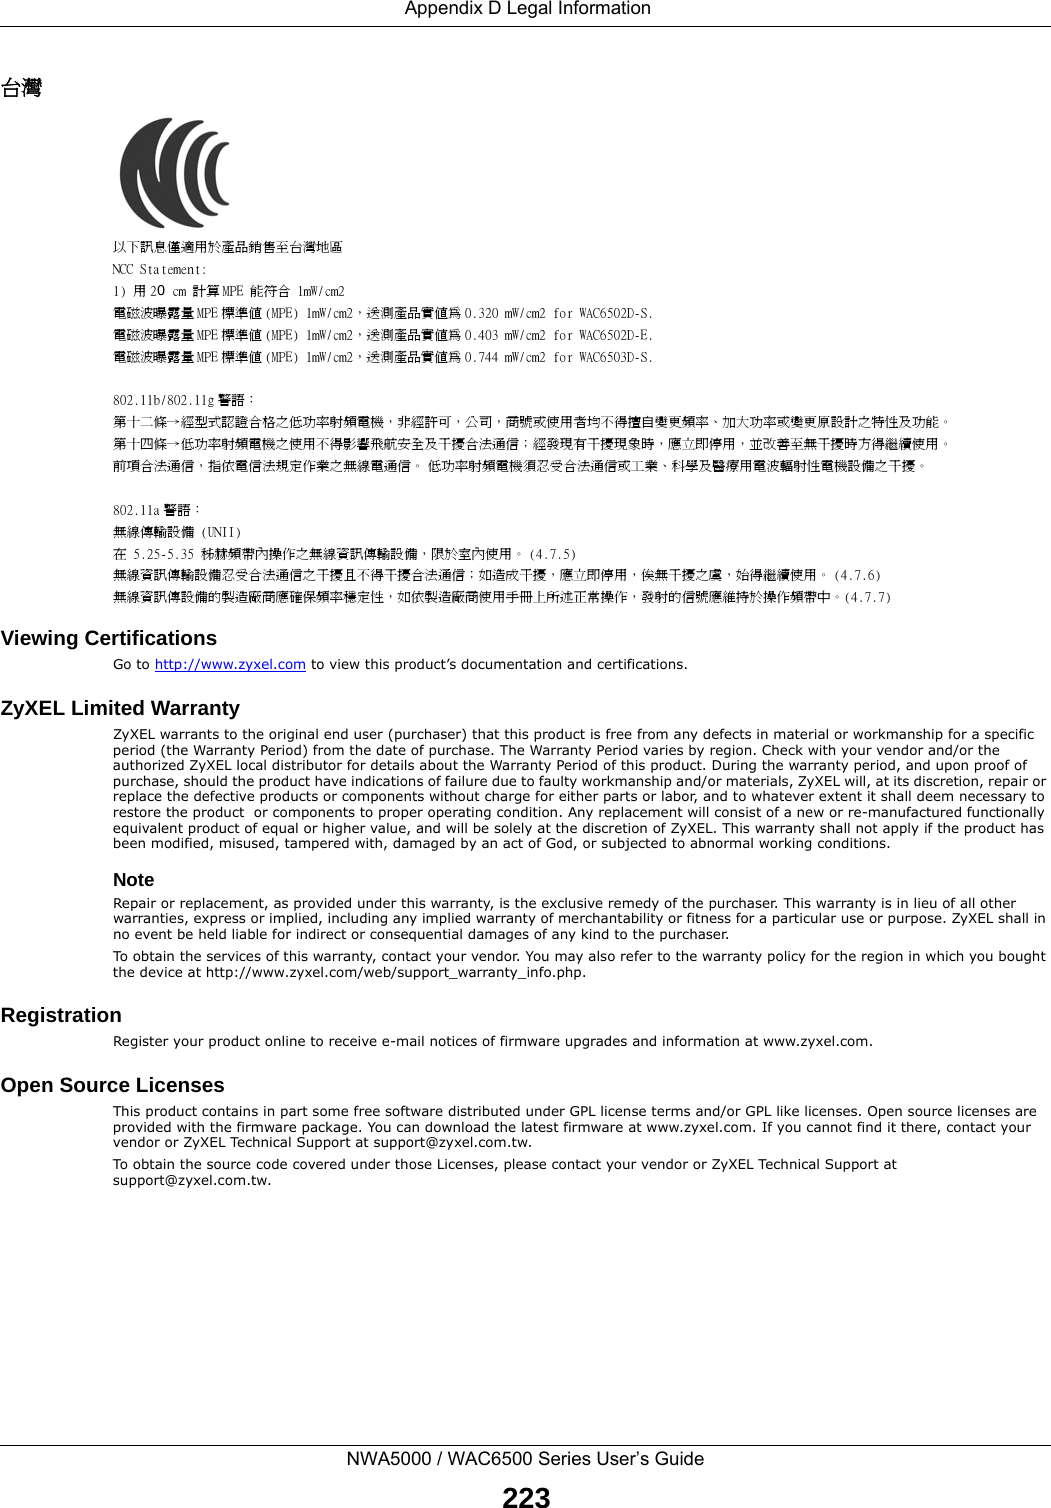  Appendix D Legal InformationNWA5000 / WAC6500 Series User’s Guide223台灣以下訊息僅適用於產品銷售至台灣地區NCC Statement:1) 用 20 cm 計算 MPE 能符合 1mW/cm2電磁波曝露量 MPE 標準值 (MPE) 1mW/cm2，送測產品實值為 0.320 mW/cm2 for WAC6502D-S.電磁波曝露量 MPE 標準值 (MPE) 1mW/cm2，送測產品實值為 0.403 mW/cm2 for WAC6502D-E.電磁波曝露量 MPE 標準值 (MPE) 1mW/cm2，送測產品實值為 0.744 mW/cm2 for WAC6503D-S.802.11b/802.11g 警語：第十二條→經型式認證合格之低功率射頻電機，非經許可，公司，商號或使用者均不得擅自變更頻率、加大功率或變更原設計之特性及功能。第十四條→低功率射頻電機之使用不得影響飛航安全及干擾合法通信；經發現有干擾現象時，應立即停用，並改善至無干擾時方得繼續使用。前項合法通信，指依電信法規定作業之無線電通信。 低功率射頻電機須忍受合法通信或工業、科學及醫療用電波輻射性電機設備之干擾。802.11a 警語：無線傳輸設備 (UNII) 在 5.25-5.35 秭赫頻帶內操作之無線資訊傳輸設備，限於室內使用。 (4.7.5)無線資訊傳輸設備忍受合法通信之干擾且不得干擾合法通信；如造成干擾，應立即停用，俟無干擾之虞，始得繼續使用。 (4.7.6)無線資訊傳設備的製造廠商應確保頻率穩定性，如依製造廠商使用手冊上所述正常操作，發射的信號應維持於操作頻帶中。(4.7.7)Viewing CertificationsGo to http://www.zyxel.com to view this product’s documentation and certifications.ZyXEL Limited WarrantyZyXEL warrants to the original end user (purchaser) that this product is free from any defects in material or workmanship for a specific period (the Warranty Period) from the date of purchase. The Warranty Period varies by region. Check with your vendor and/or the authorized ZyXEL local distributor for details about the Warranty Period of this product. During the warranty period, and upon proof of purchase, should the product have indications of failure due to faulty workmanship and/or materials, ZyXEL will, at its discretion, repair or replace the defective products or components without charge for either parts or labor, and to whatever extent it shall deem necessary to restore the product  or components to proper operating condition. Any replacement will consist of a new or re-manufactured functionally equivalent product of equal or higher value, and will be solely at the discretion of ZyXEL. This warranty shall not apply if the product has been modified, misused, tampered with, damaged by an act of God, or subjected to abnormal working conditions.NoteRepair or replacement, as provided under this warranty, is the exclusive remedy of the purchaser. This warranty is in lieu of all other warranties, express or implied, including any implied warranty of merchantability or fitness for a particular use or purpose. ZyXEL shall in no event be held liable for indirect or consequential damages of any kind to the purchaser.To obtain the services of this warranty, contact your vendor. You may also refer to the warranty policy for the region in which you bought the device at http://www.zyxel.com/web/support_warranty_info.php.RegistrationRegister your product online to receive e-mail notices of firmware upgrades and information at www.zyxel.com.Open Source LicensesThis product contains in part some free software distributed under GPL license terms and/or GPL like licenses. Open source licenses are provided with the firmware package. You can download the latest firmware at www.zyxel.com. If you cannot find it there, contact your vendor or ZyXEL Technical Support at support@zyxel.com.tw. To obtain the source code covered under those Licenses, please contact your vendor or ZyXEL Technical Support at support@zyxel.com.tw.  